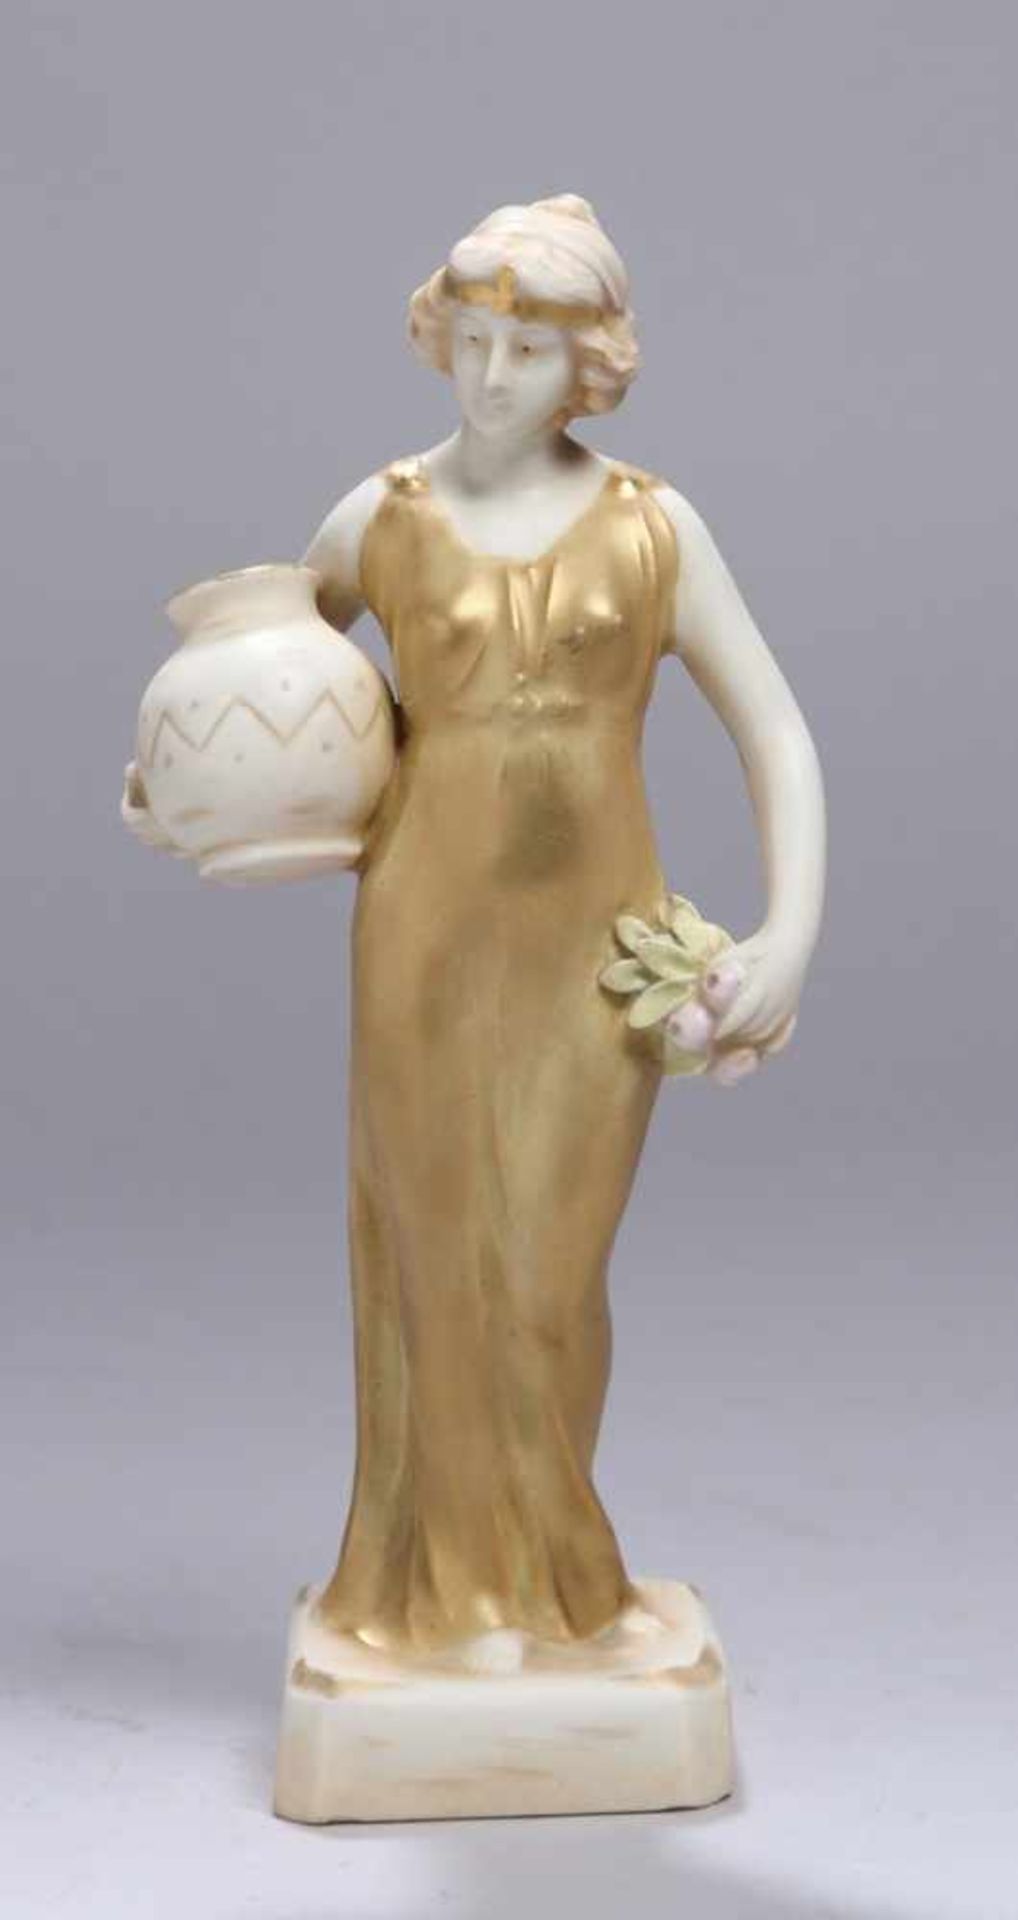 Keramik-Figur, "Antikisierende Dame", Ernst Wahliss, Royal Vienna, um 1910, Mod.nr.: 1077,auf